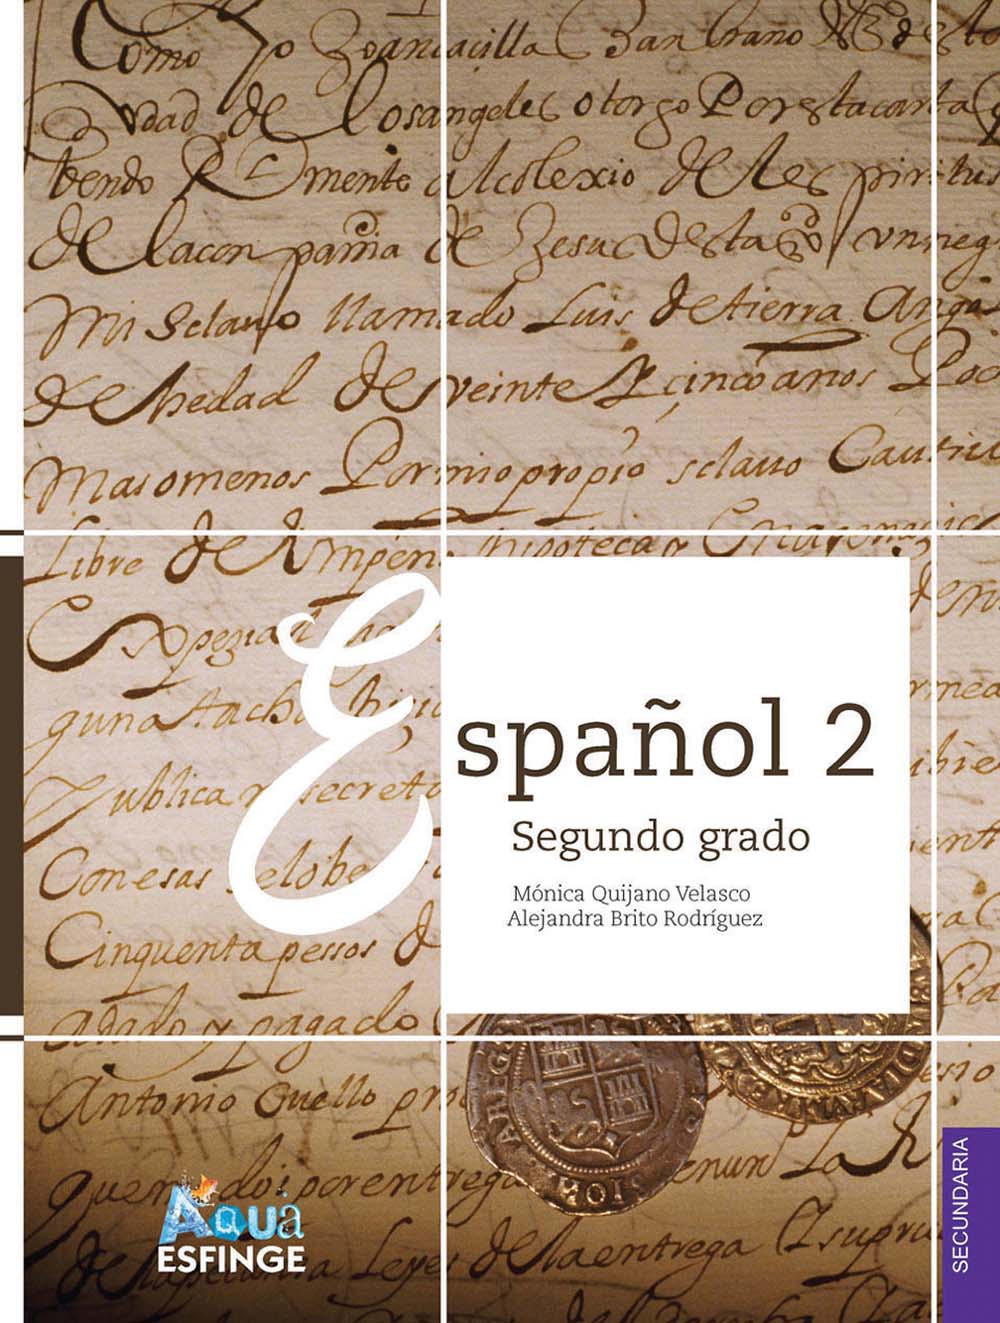 Español 2. Serie Aqua, Editorial: Esfinge, Nivel: Secundaria, Grado: 2